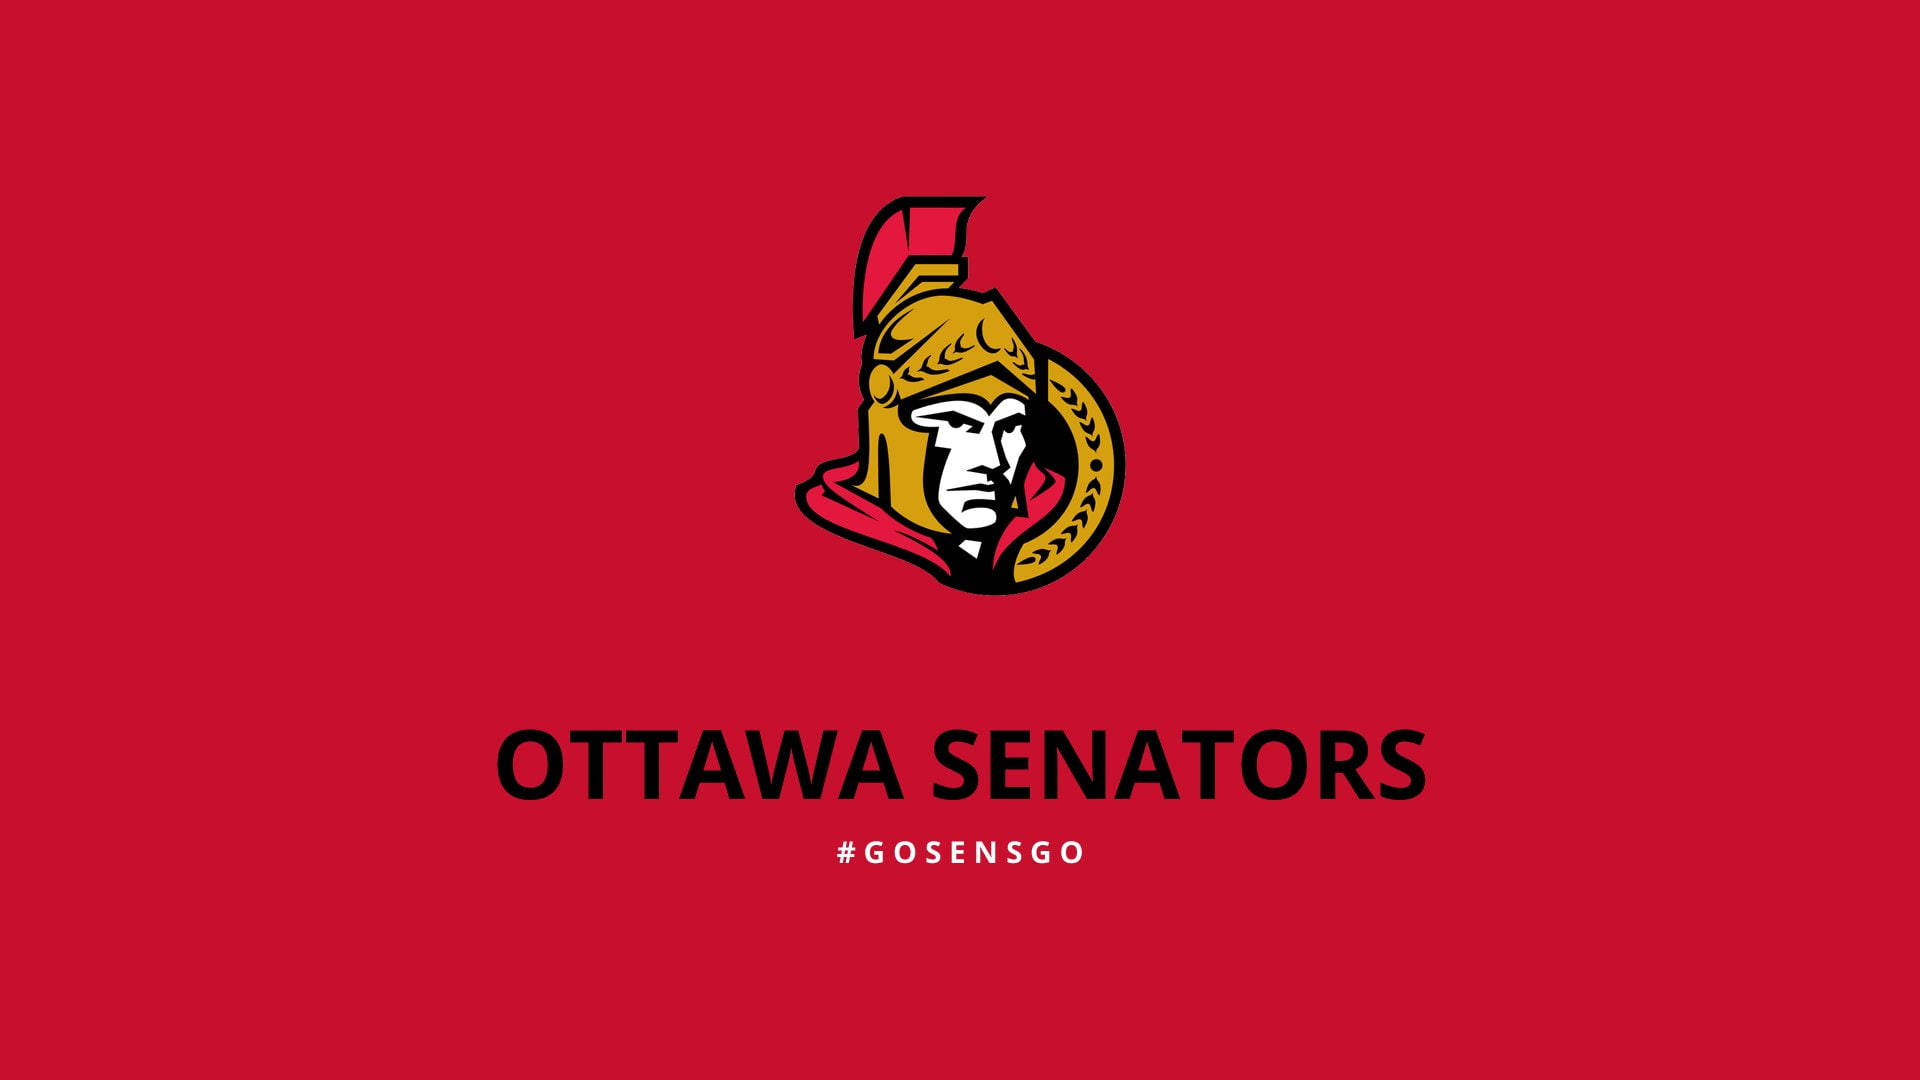 Ottawa Senators Red Poster Wallpaper